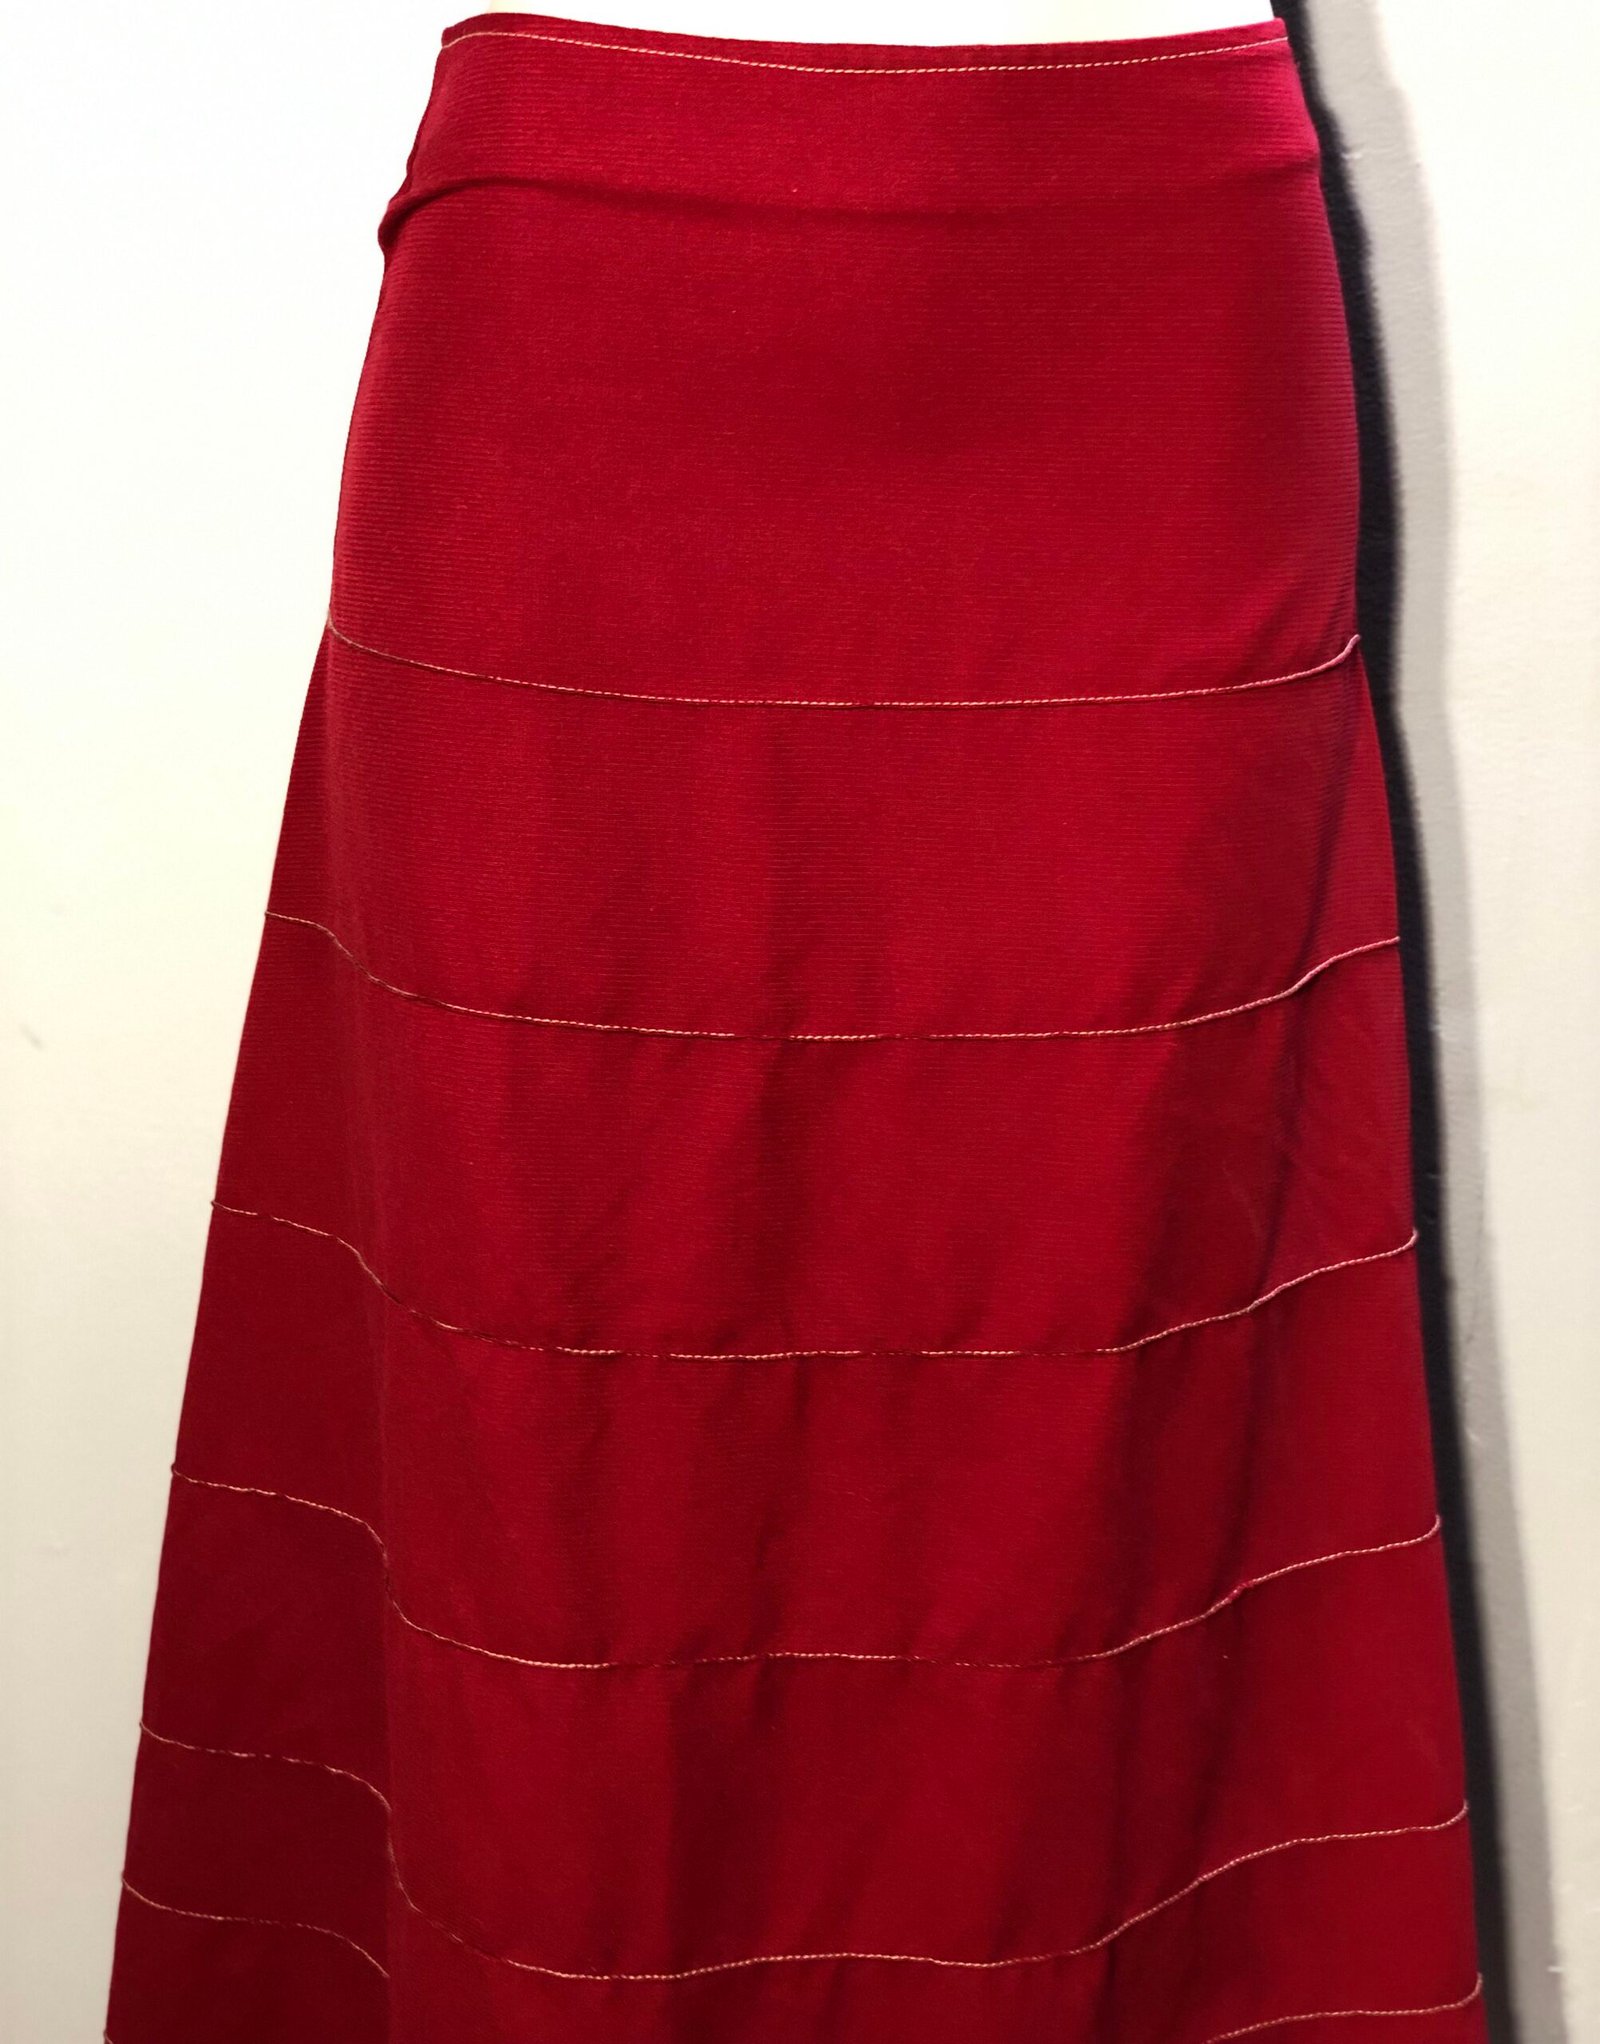 Subzero RED Skirt – Size 34